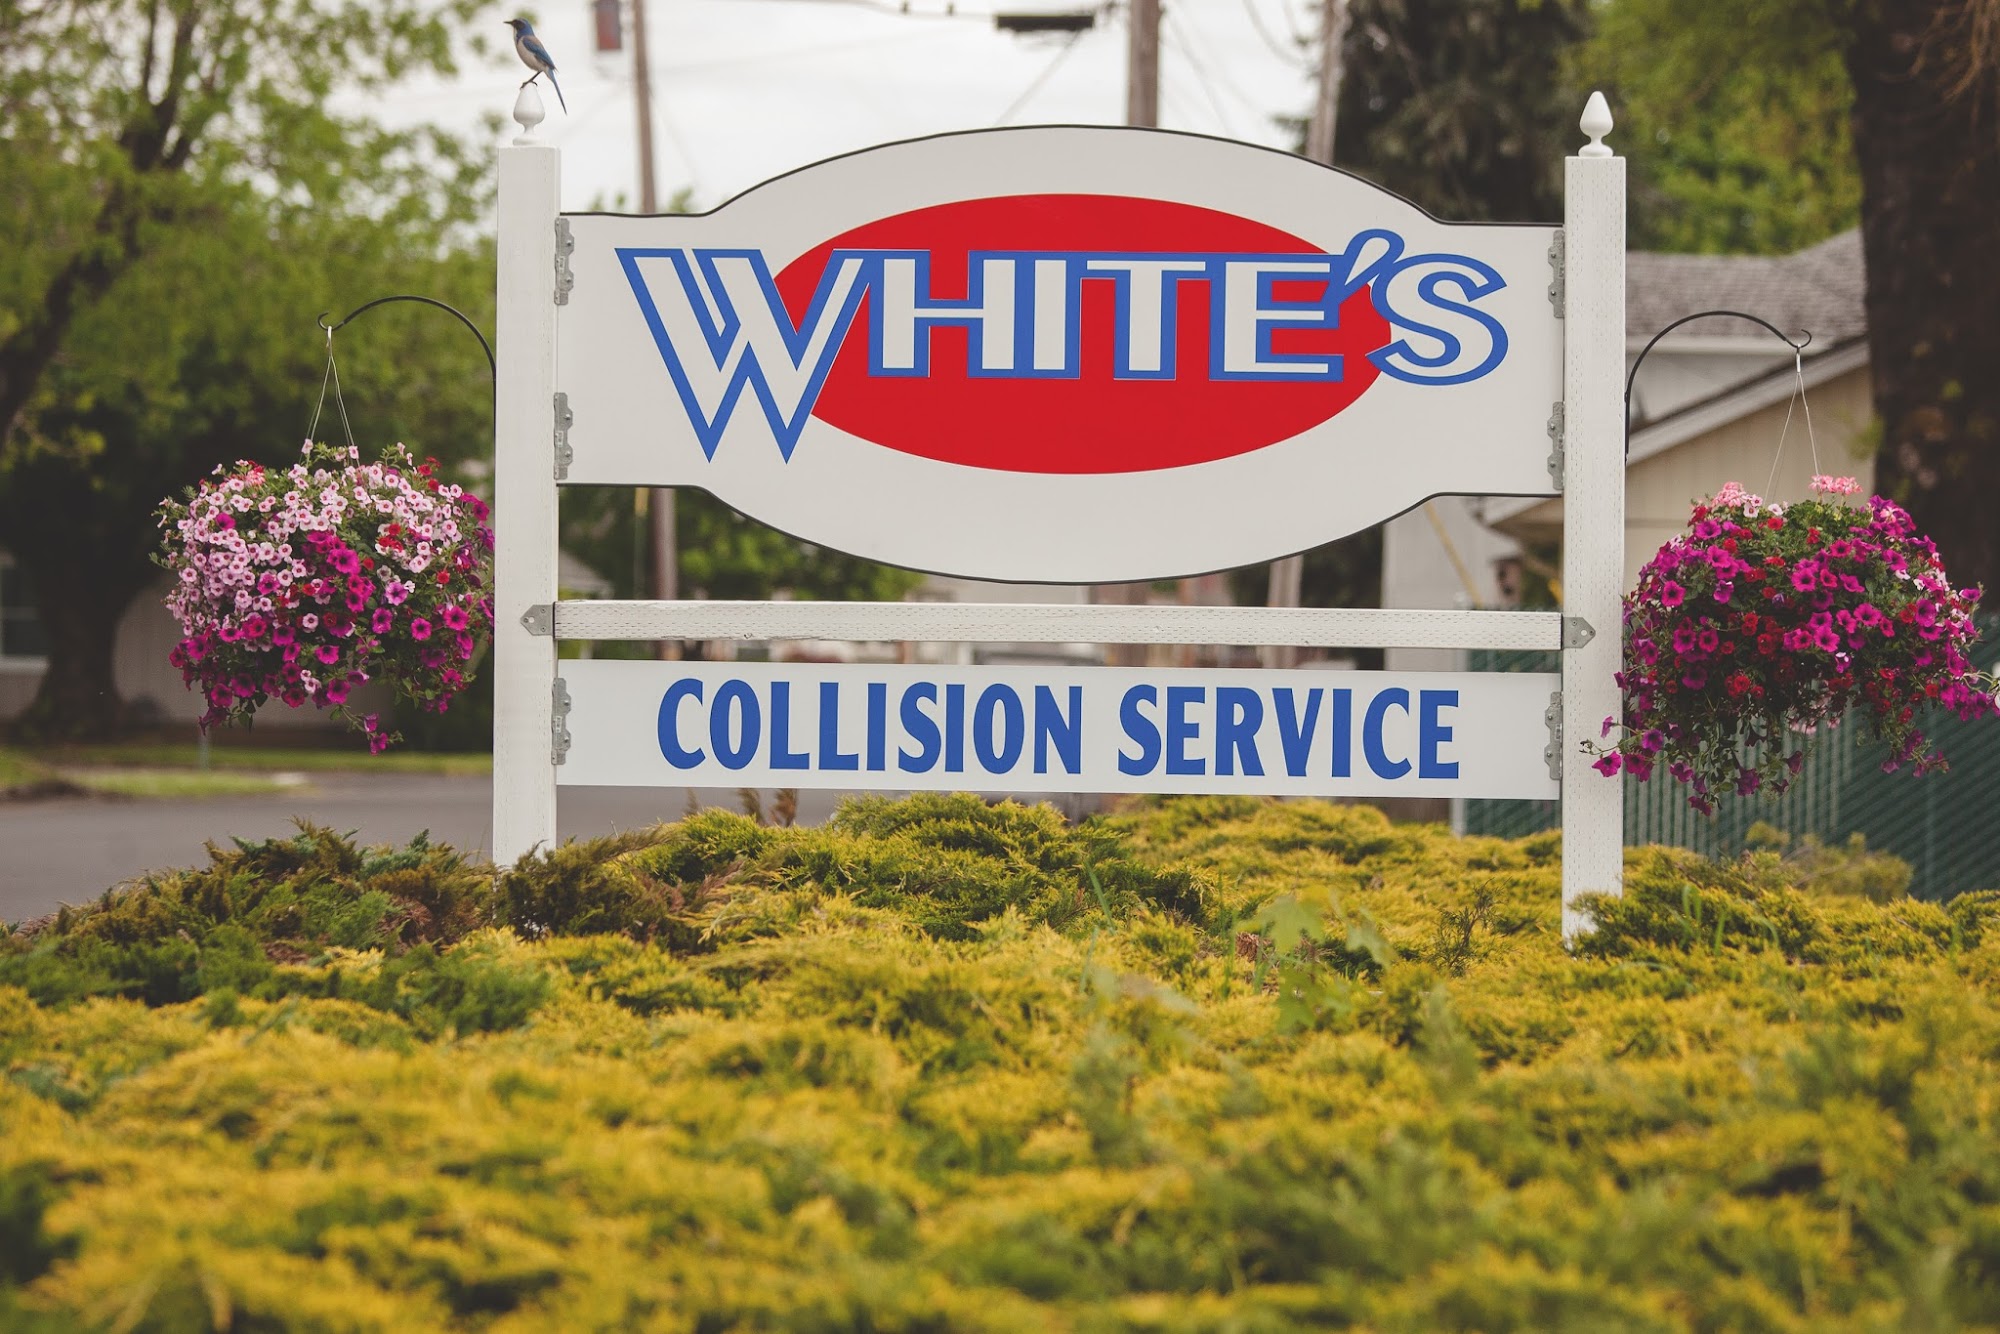 White's Collision Service